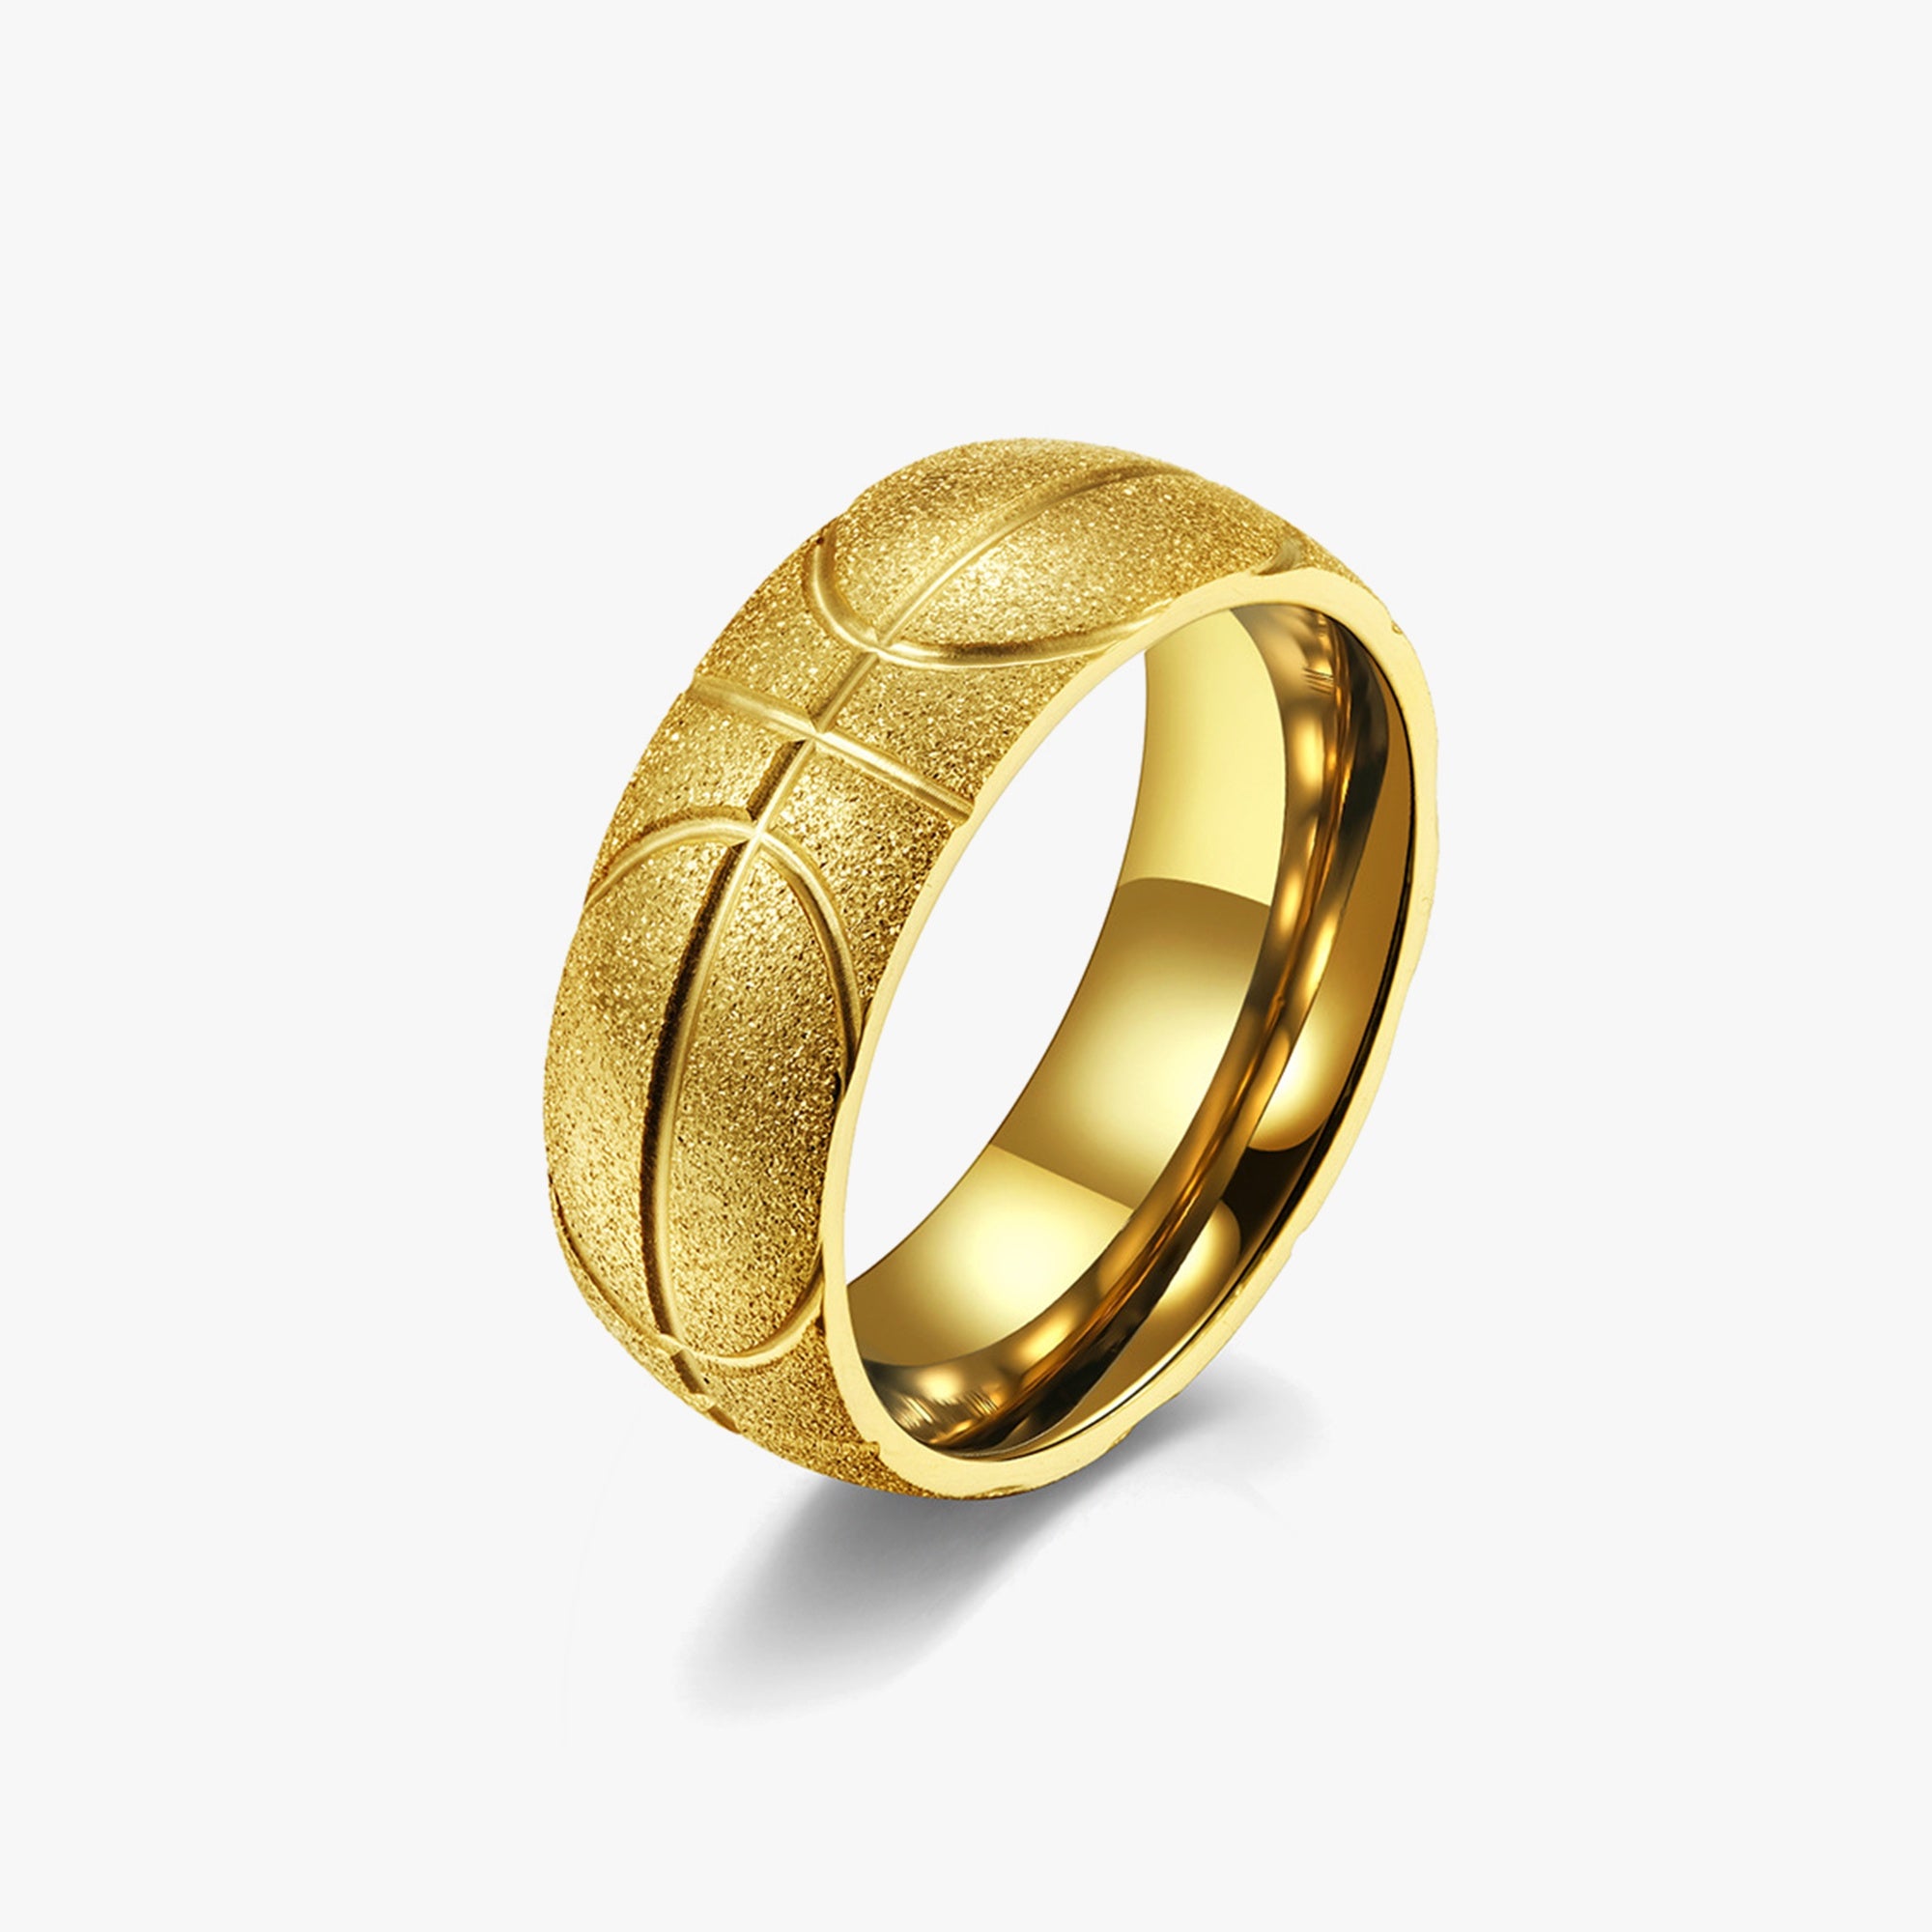 Golden Basketball Ring